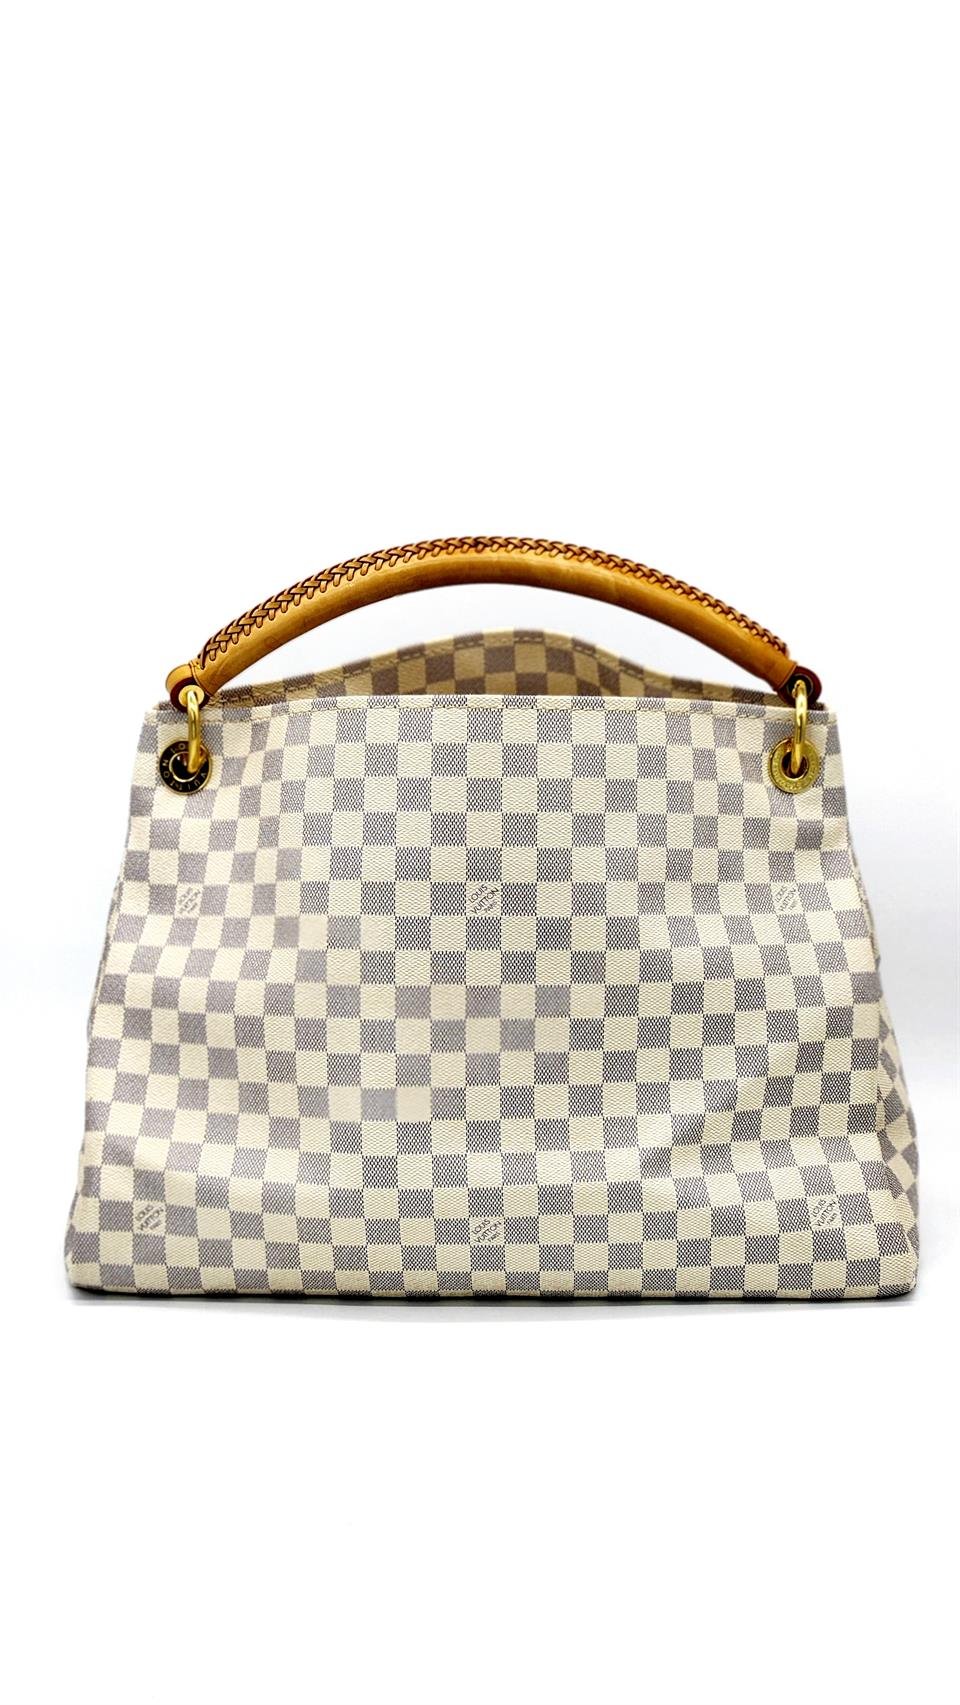 Louis Vuitton Artsy Handbag 384205